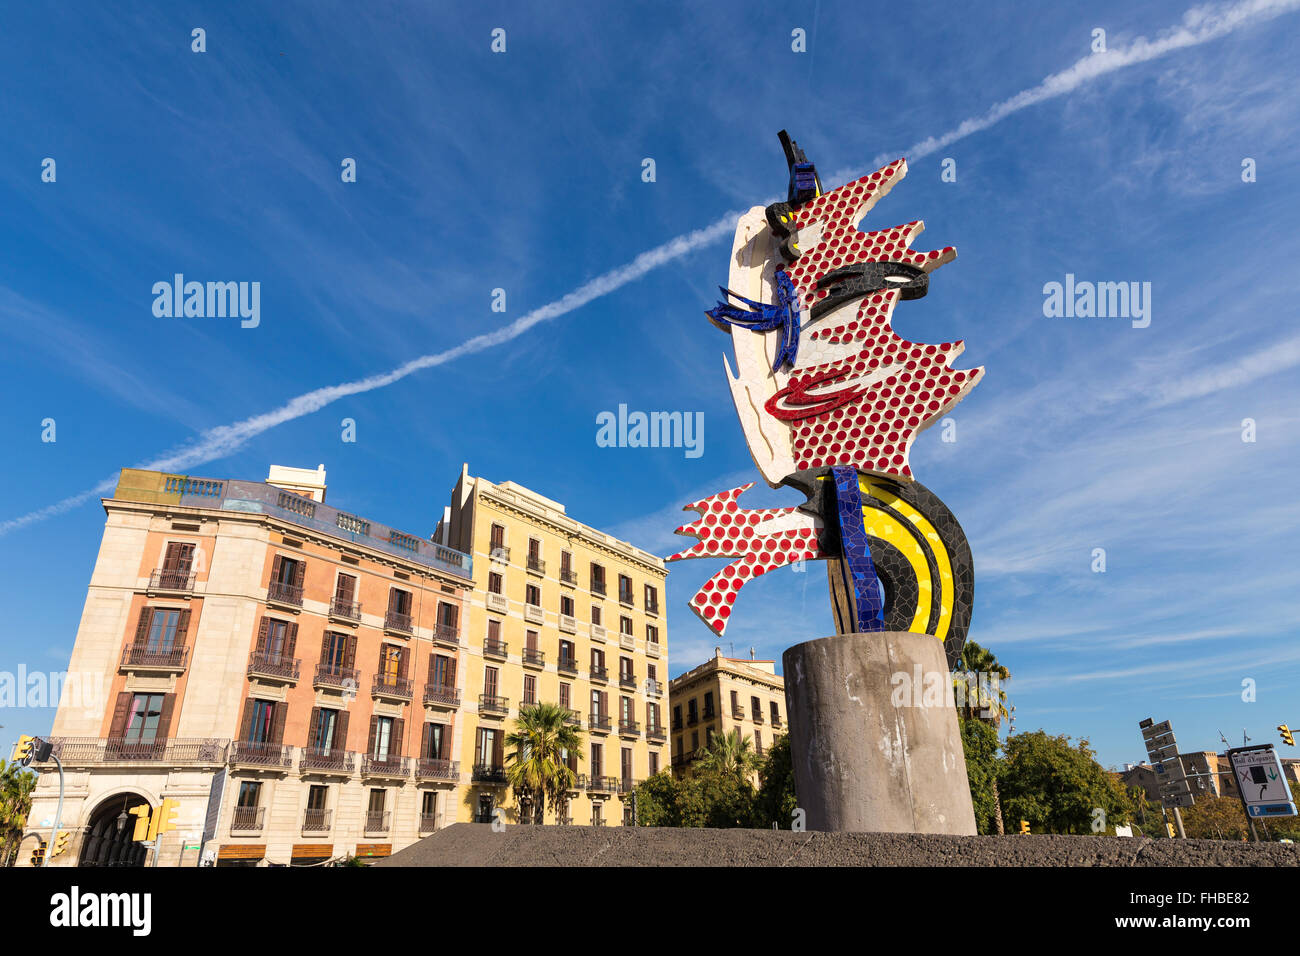 El Cap de Barcelone est une sculpture surréaliste à Barcelone, Catalogne, Espagne. Banque D'Images